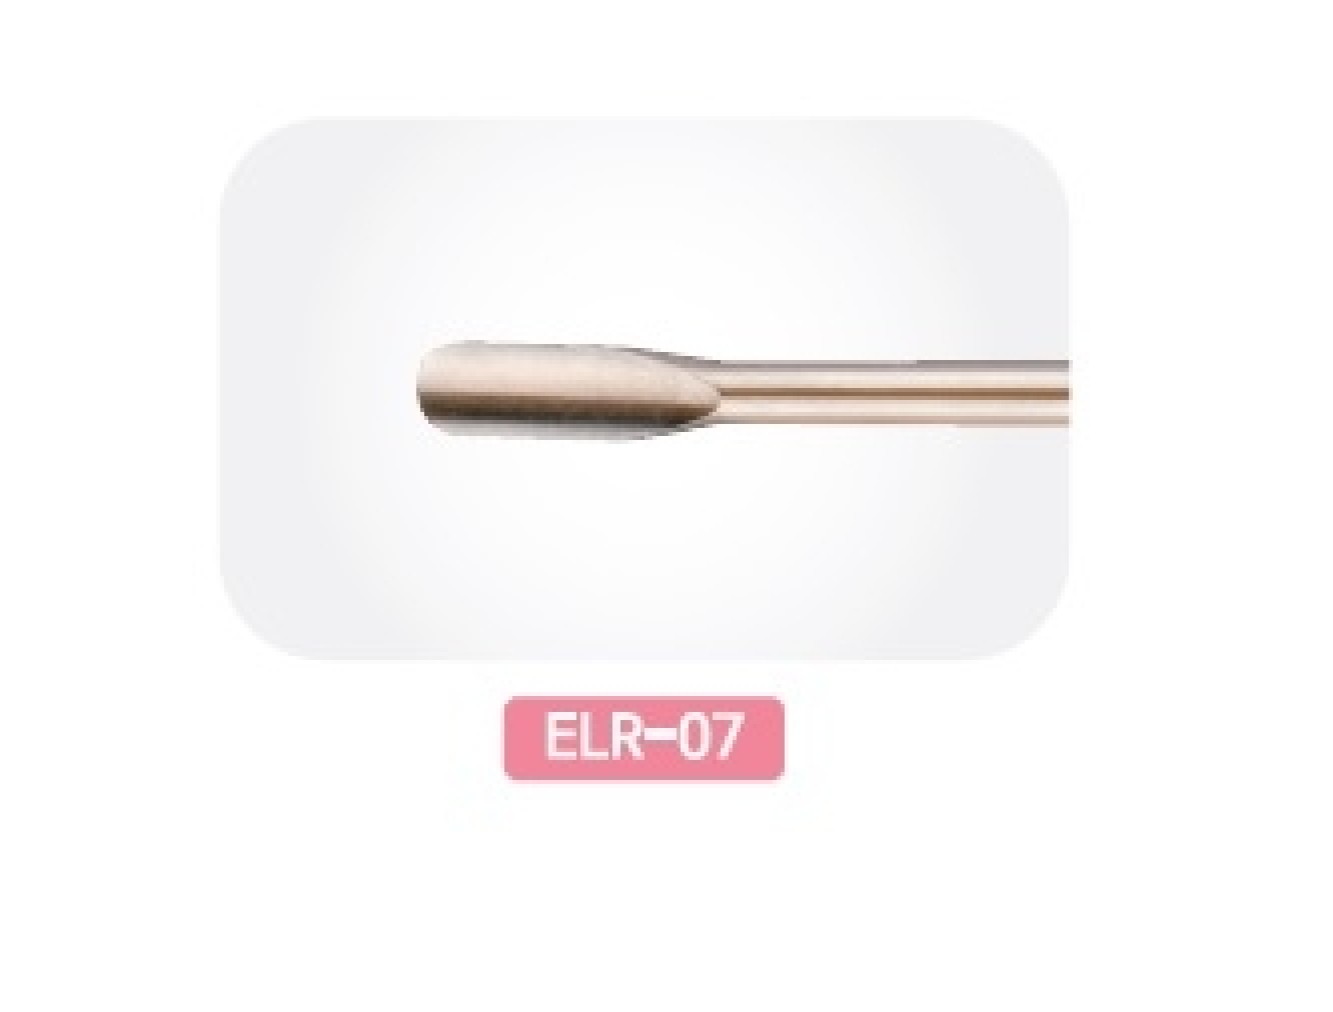 ELR-07 Стоматологическое Сменное лезвие: Люксатор Bein 5 мм прямой для фронтальных зубов, Mr.Curette Tech, Южная Корея